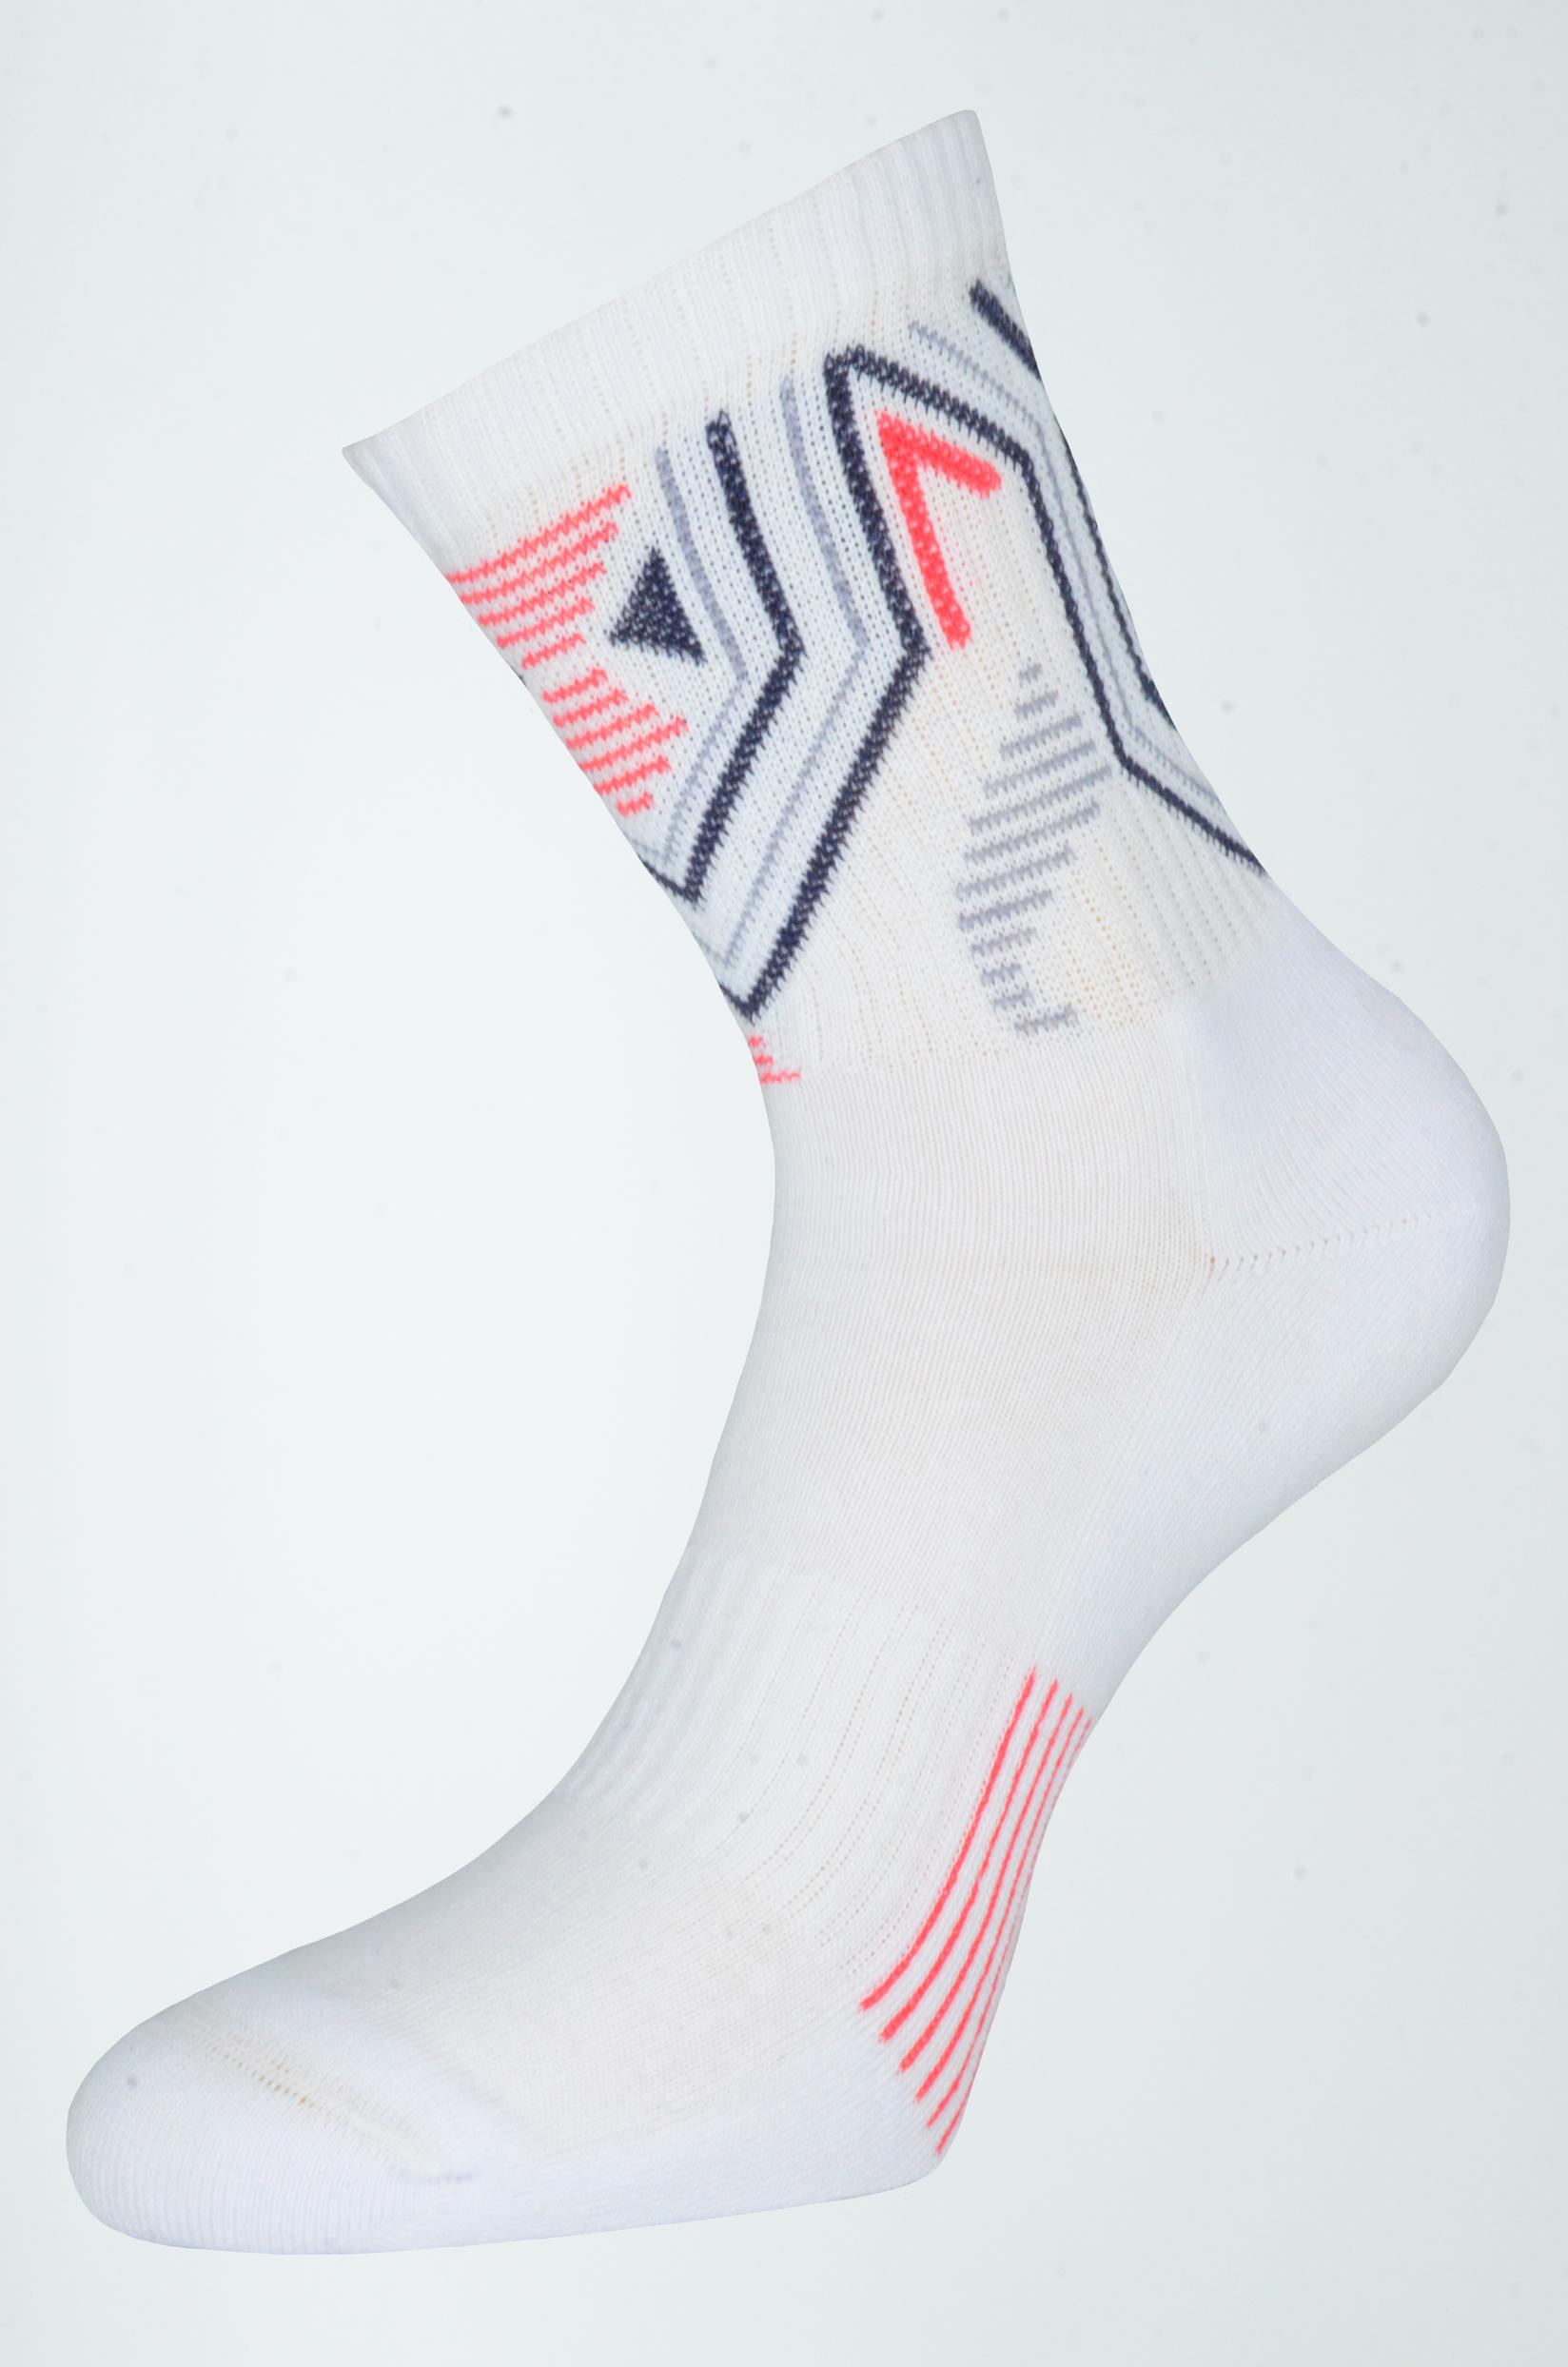 Selected image for GERBI Sportske čarape Sport Style 36-38 m7 bele